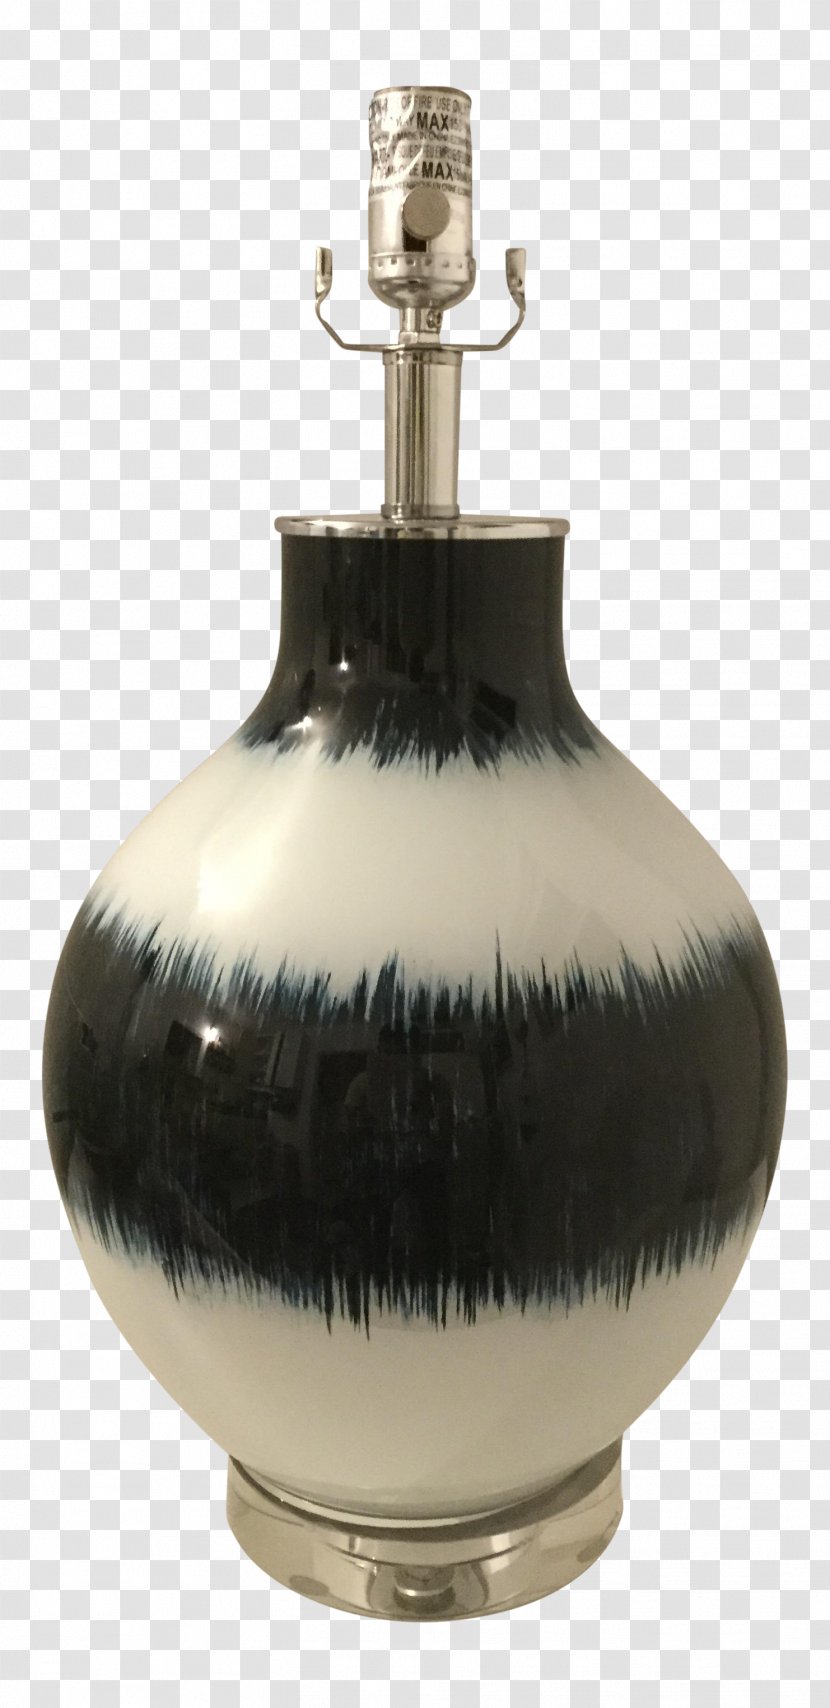 Vase - Barware Transparent PNG